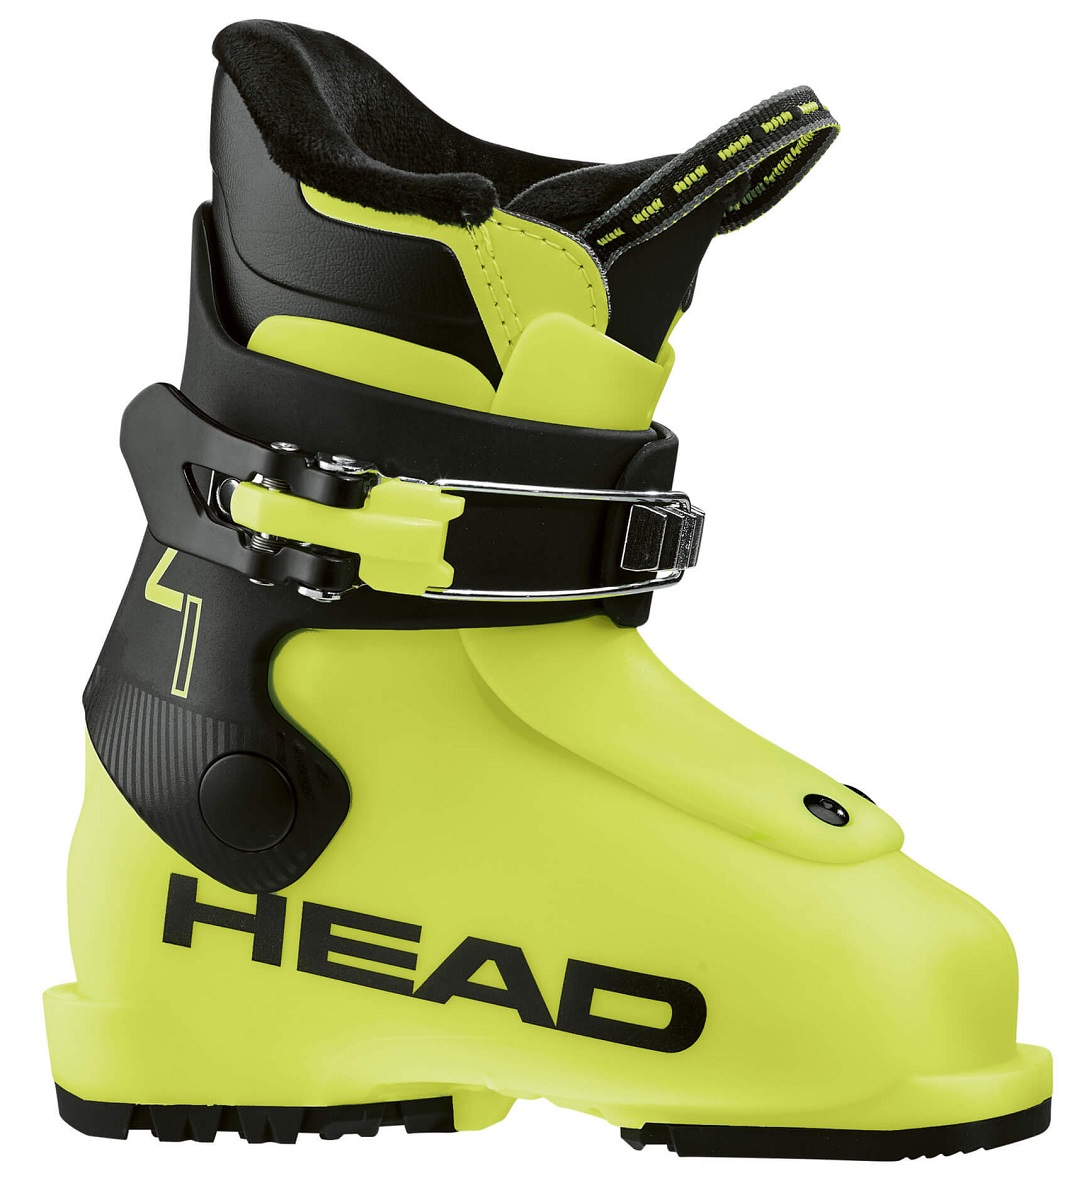 Горнолыжные ботинки HEAD Z1 yellow/black